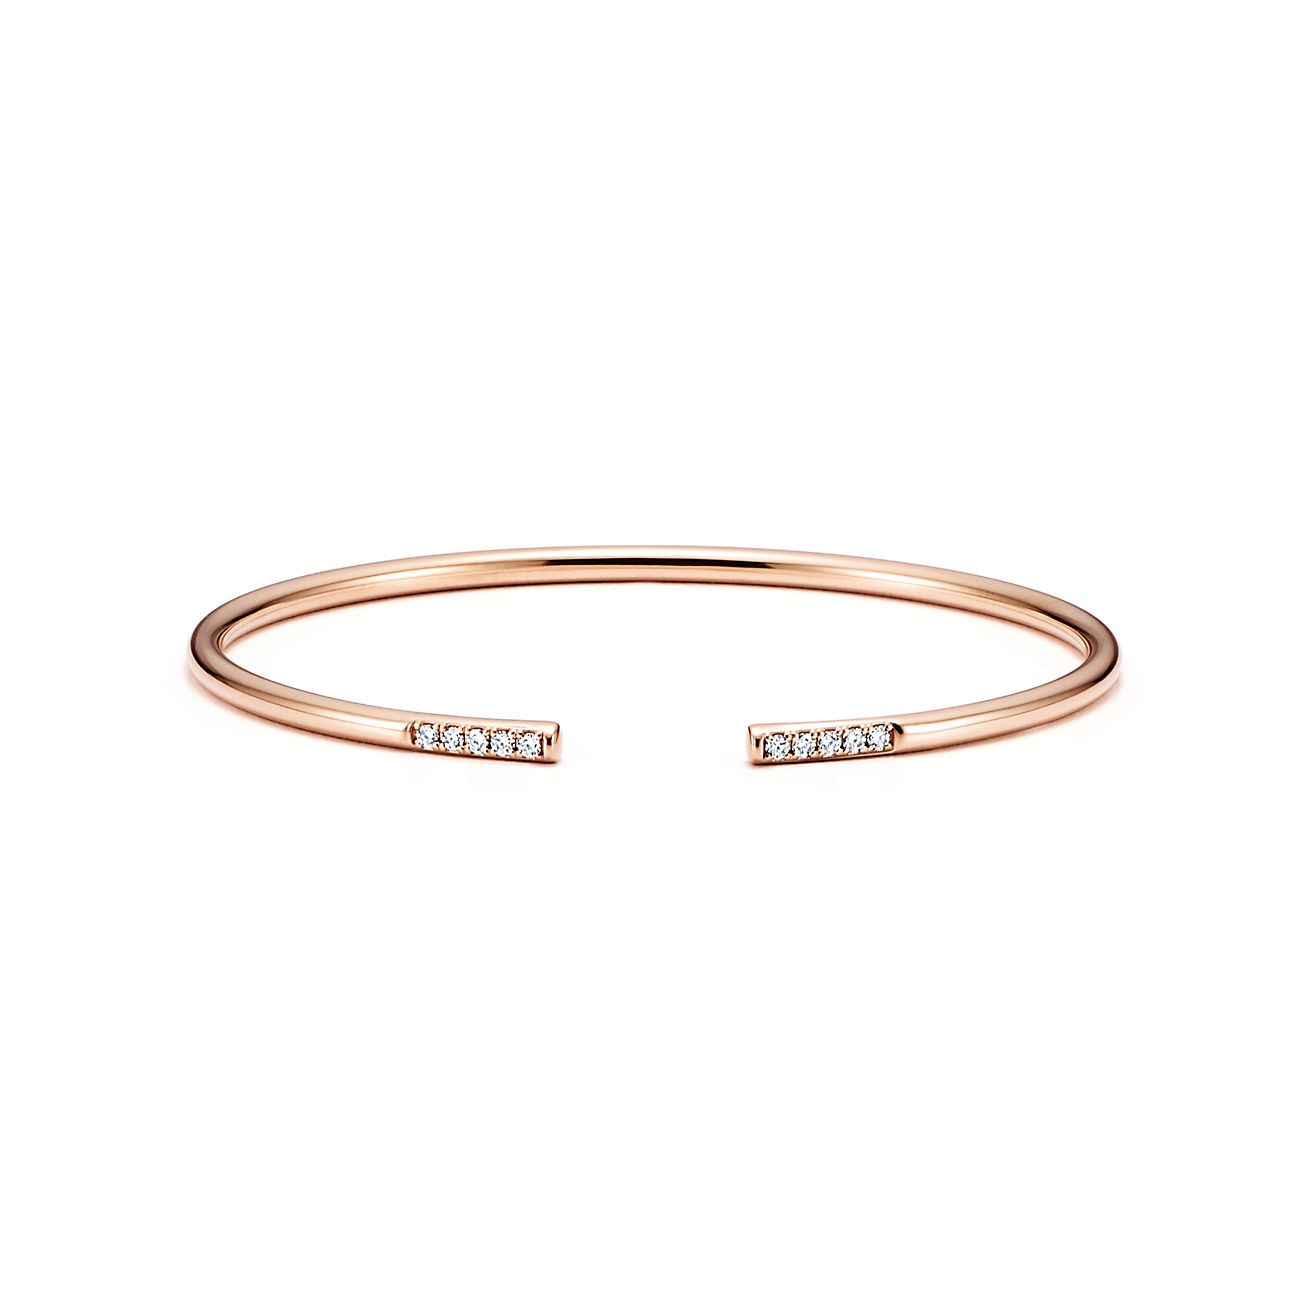 Tiffany Metro wire bracelet in 18k rose 